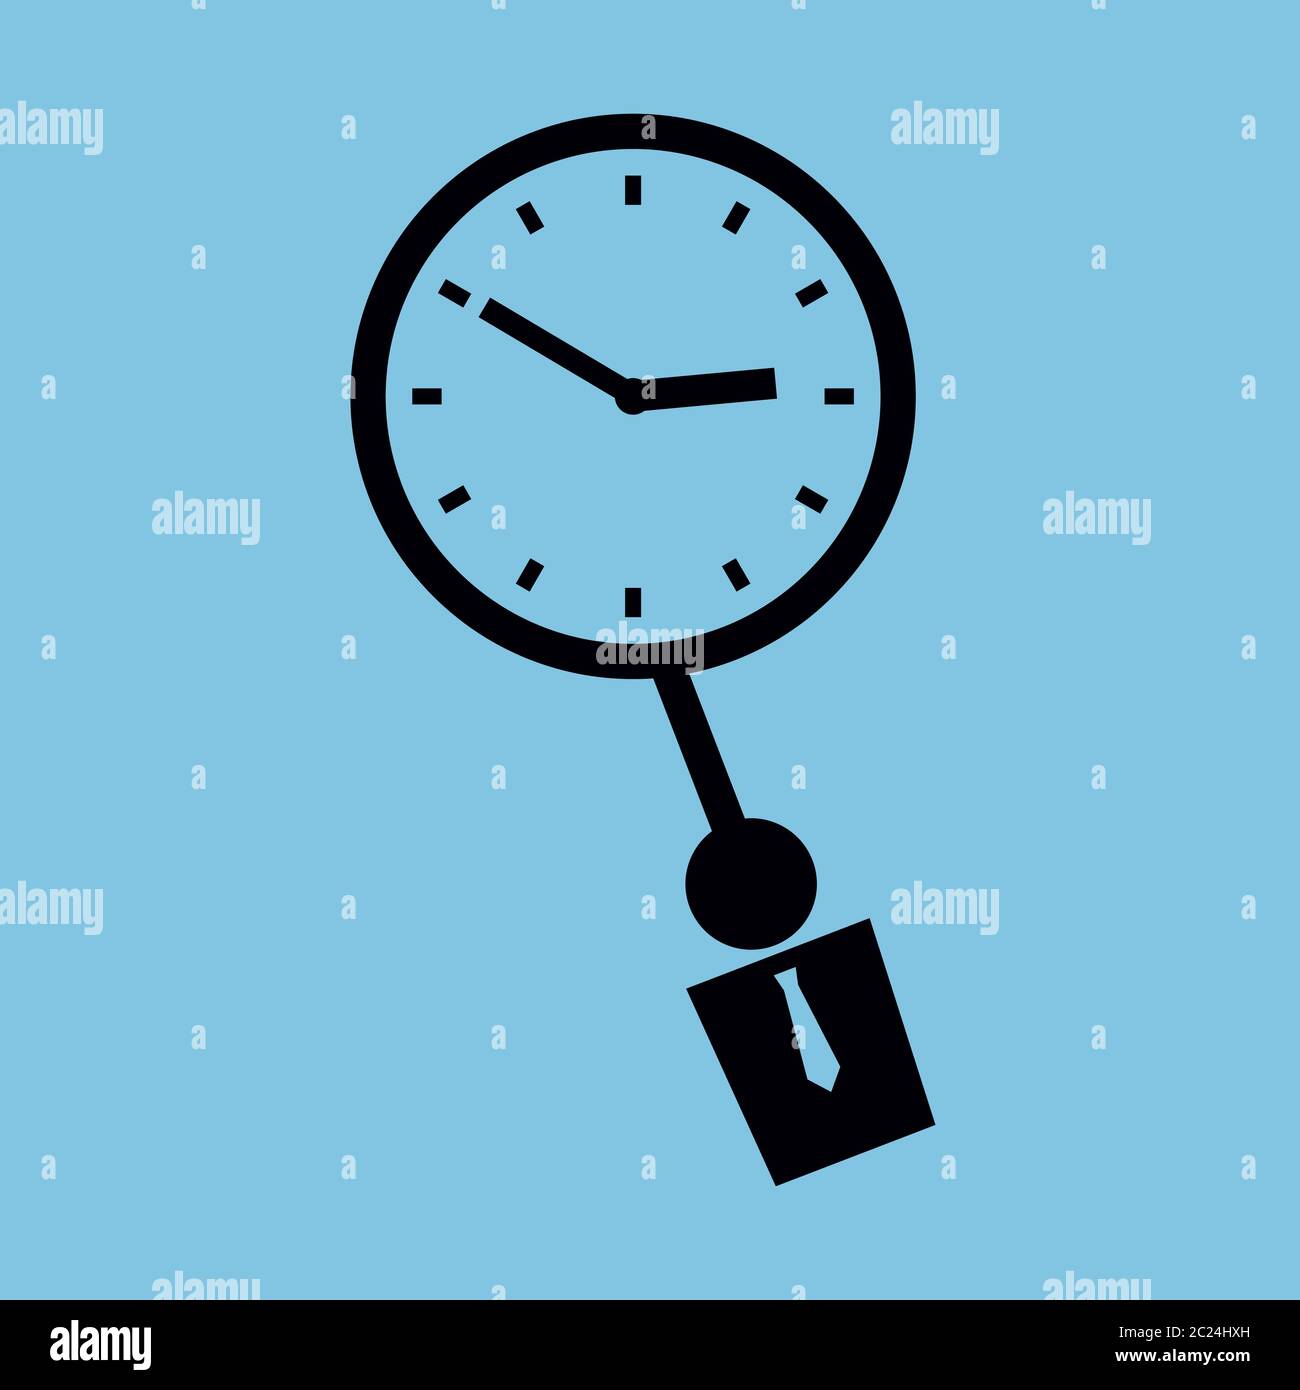 Illustrazione vettoriale minimalista. Icona di un orologio con un essere umano invece di pendolo. Colori nero e blu. Formato quadrato. Illustrazione Vettoriale